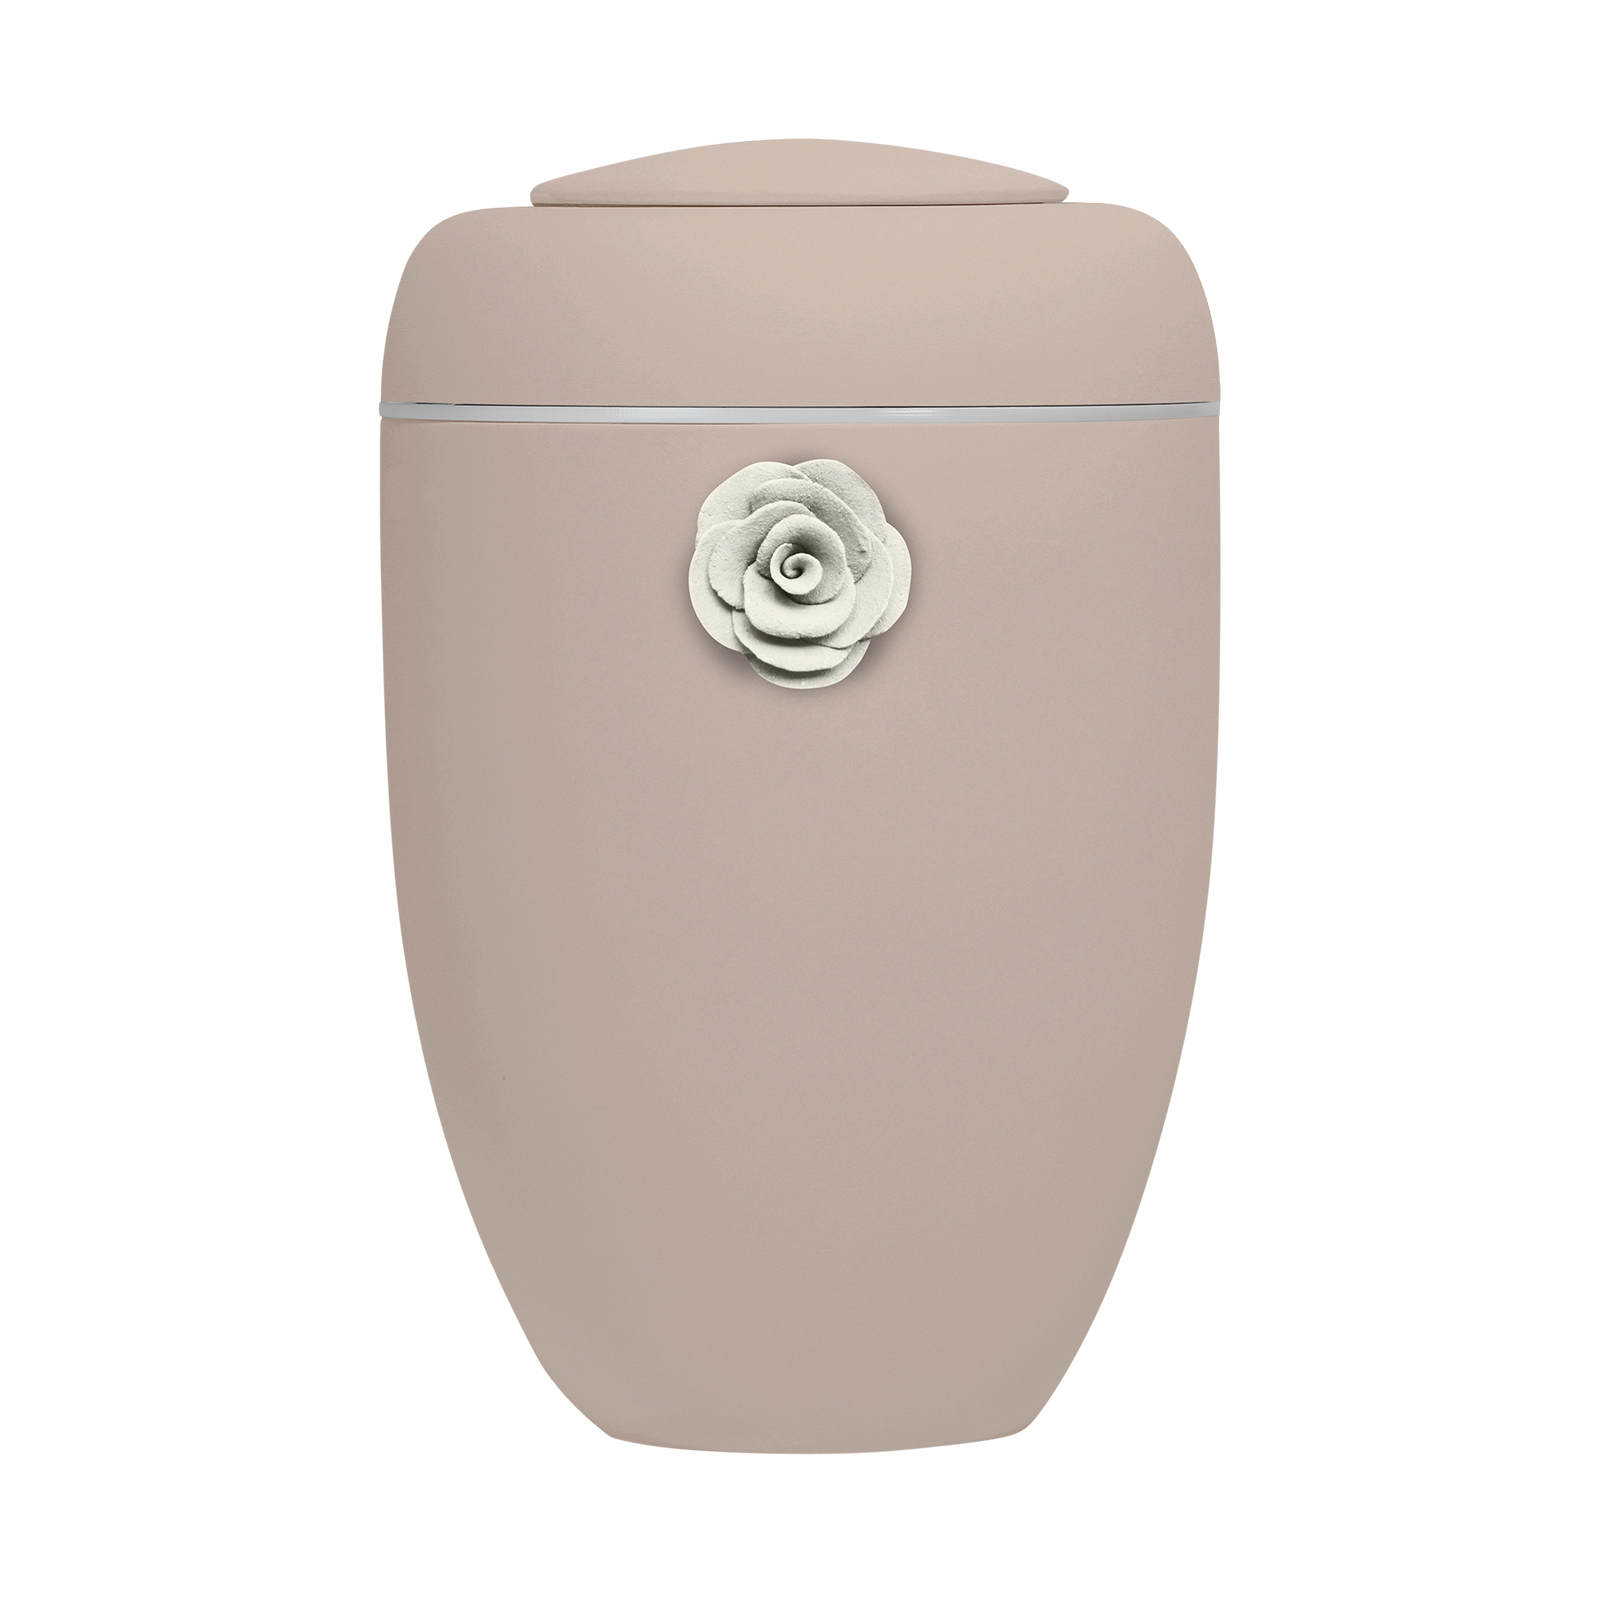 Oxidrote Symbol-Urne mit weißer Tonrose und weißer Plexiglasscheibe